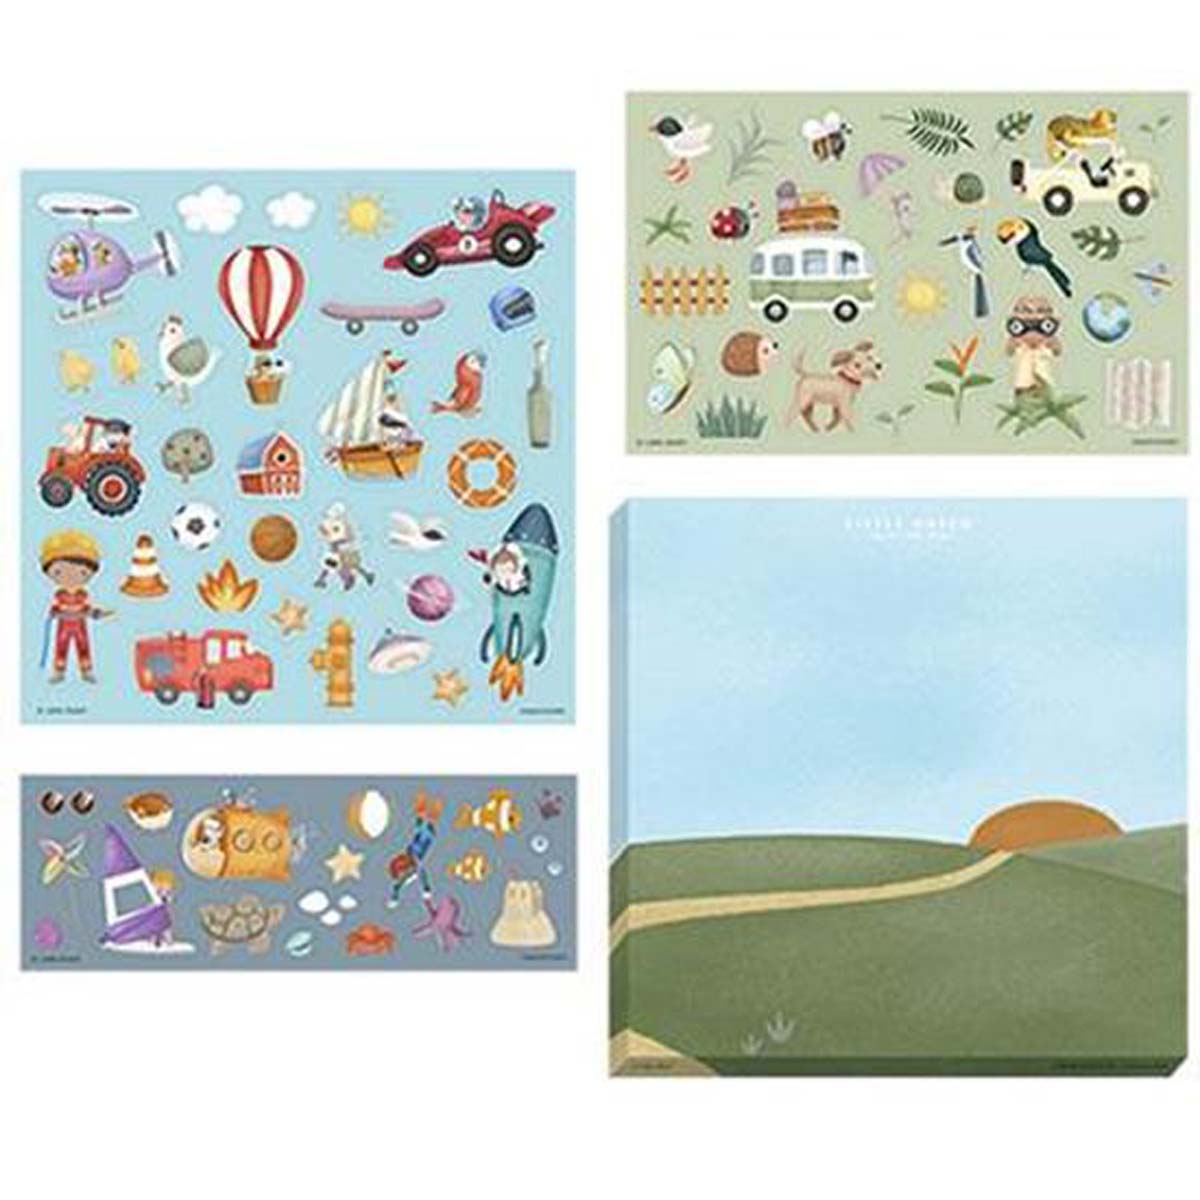 Voor creatieve kindjes:  stickers jim & friends van het merk Little Dutch. De stickerset bestaat uit 3 stickervellen met meer dan 70 stickers en een achtergrond die versierd kan worden. Vanaf 3 jaar. VanZus